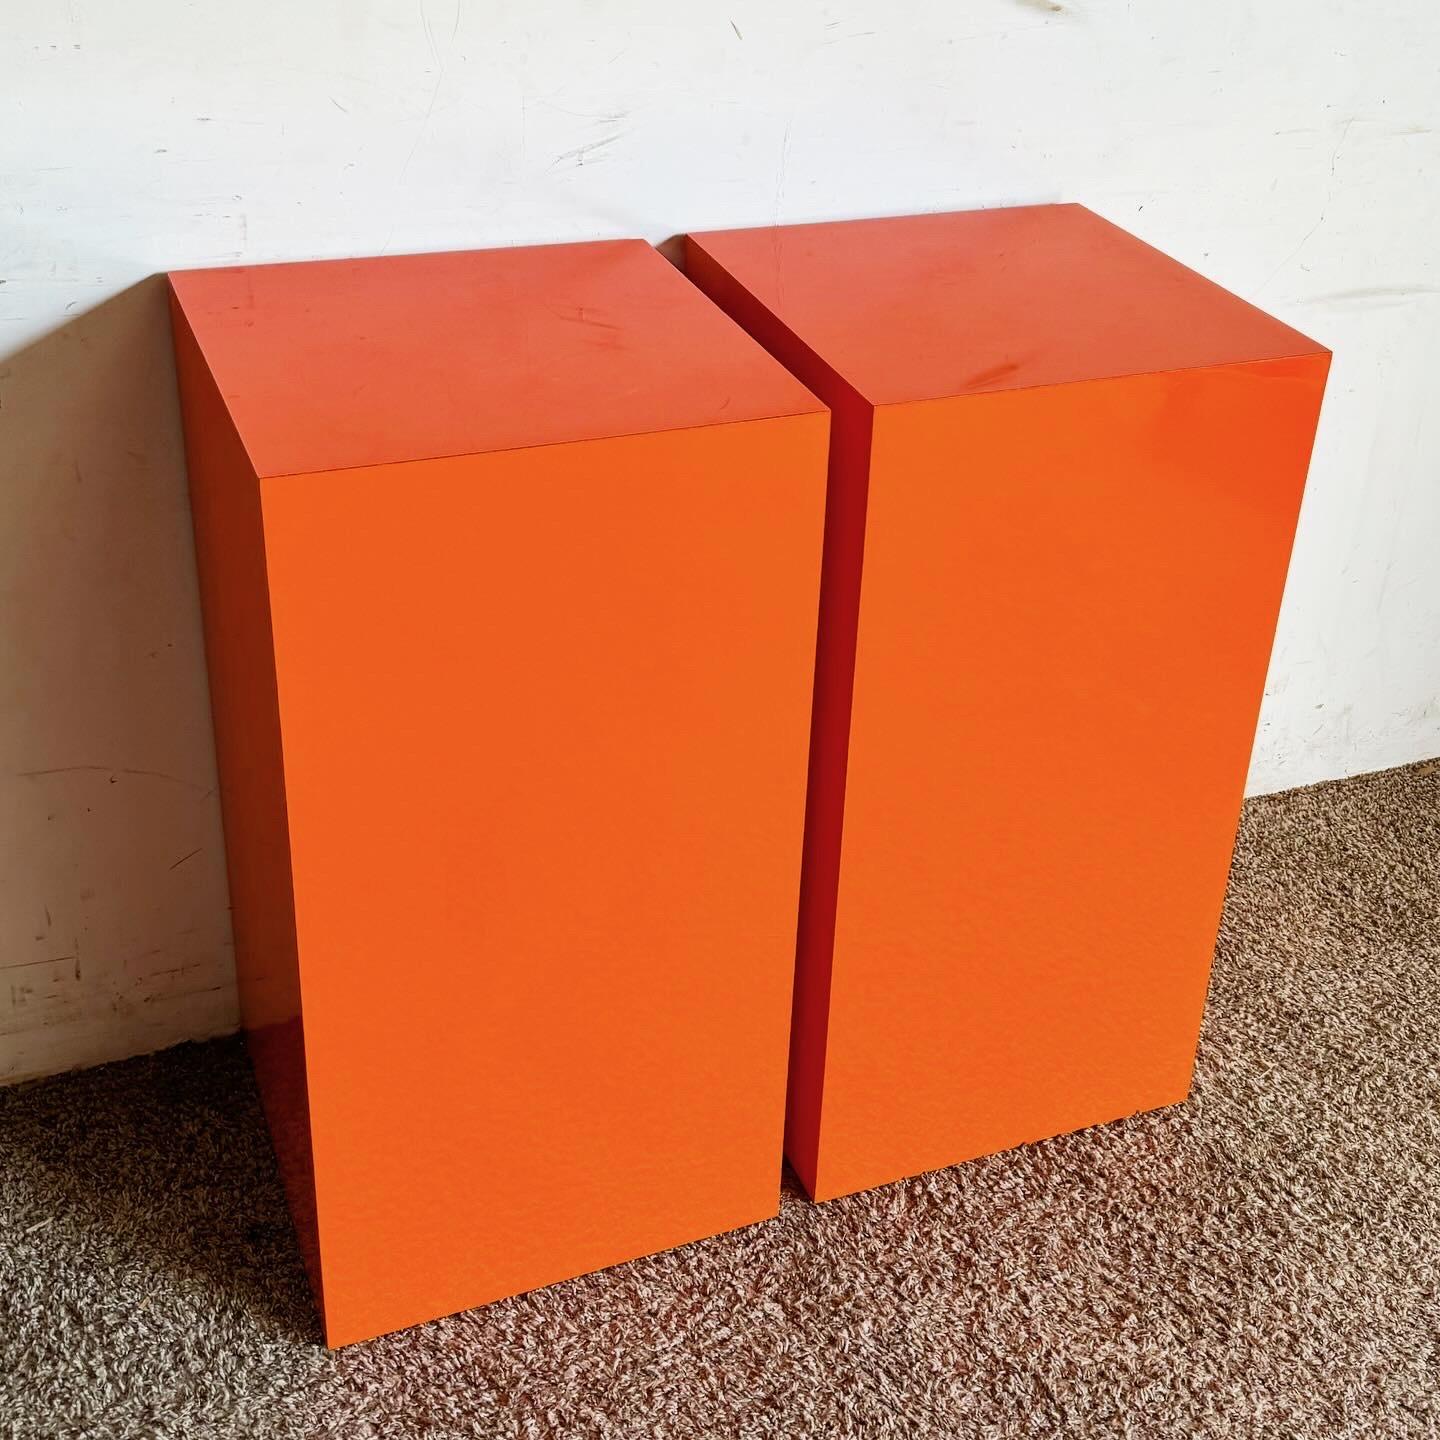 Heben Sie Ihre Einrichtung mit den Display-Sockeln in leuchtendem Orange hervor, die eine lebendige Ästhetik mit einem schlanken, modernen Design für auffällige Displays verbinden.
Vintage-Stücke können altersbedingte Gebrauchsspuren aufweisen.